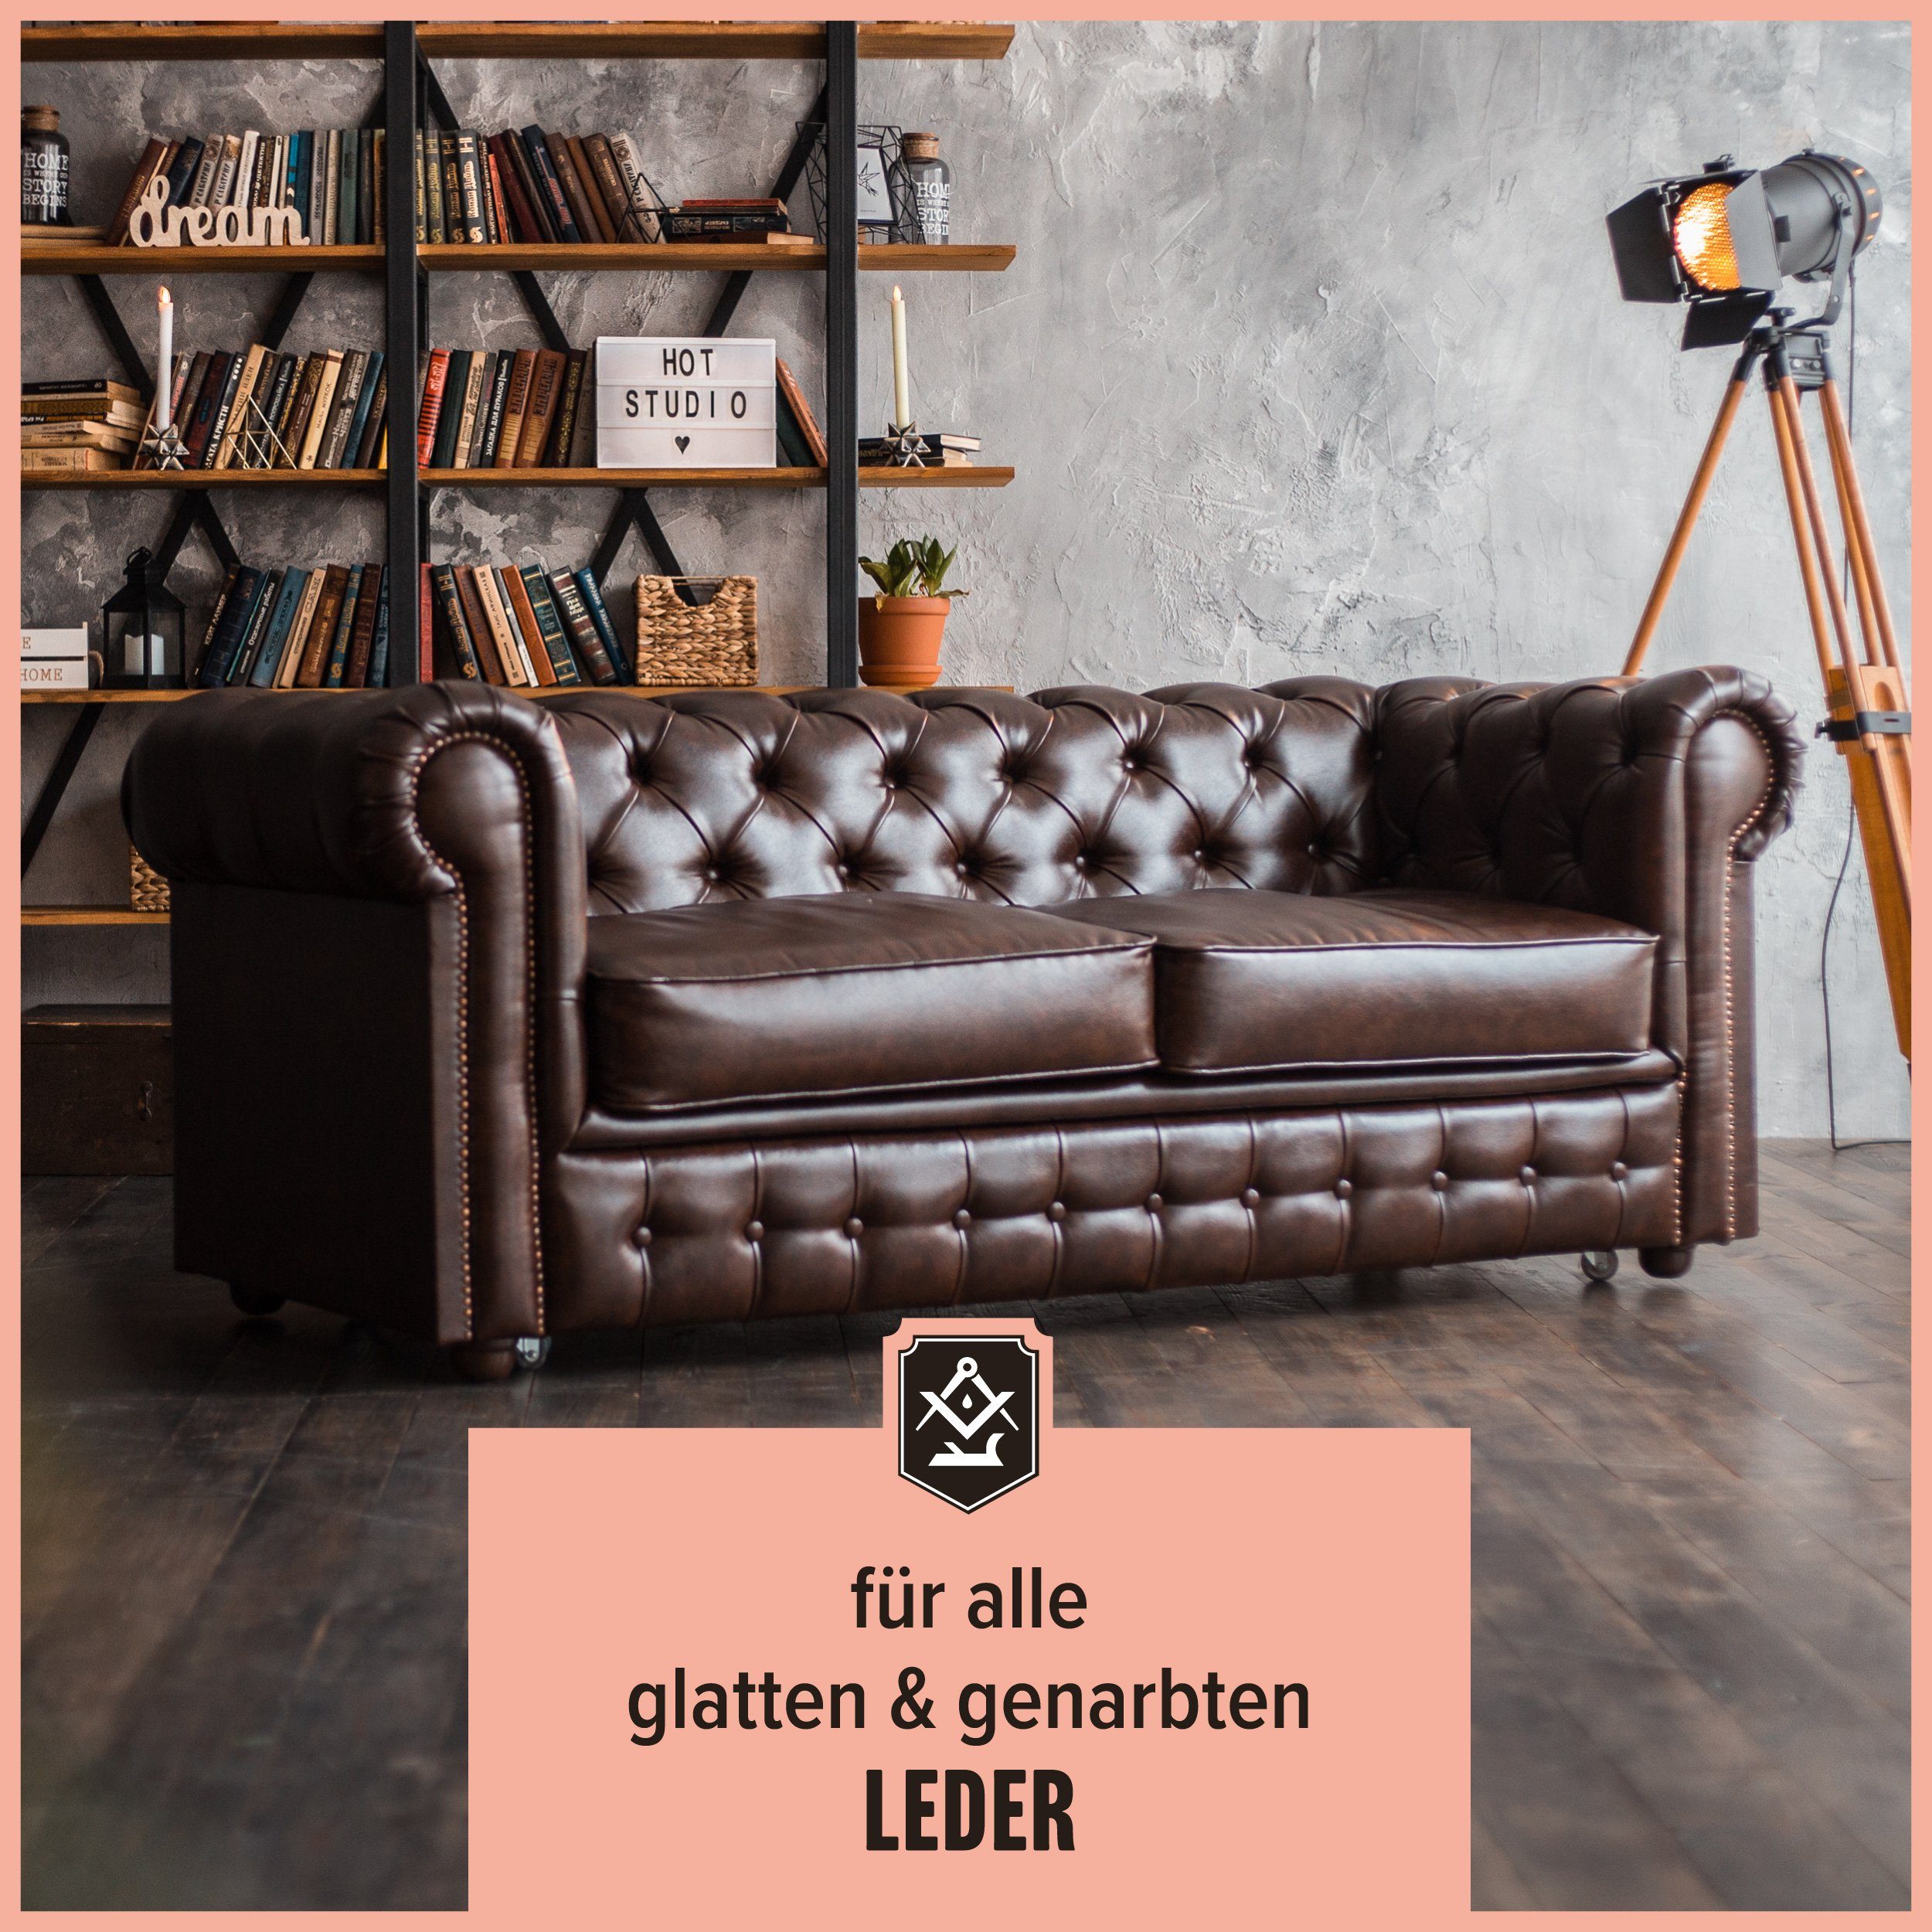 Schrader Leder Pflege zum zweiteiliges in + Set Glattleder Made Germany) (zur Schutz von - Baumwolltuch einfachen und Pflege Lederreiniger Balsam 